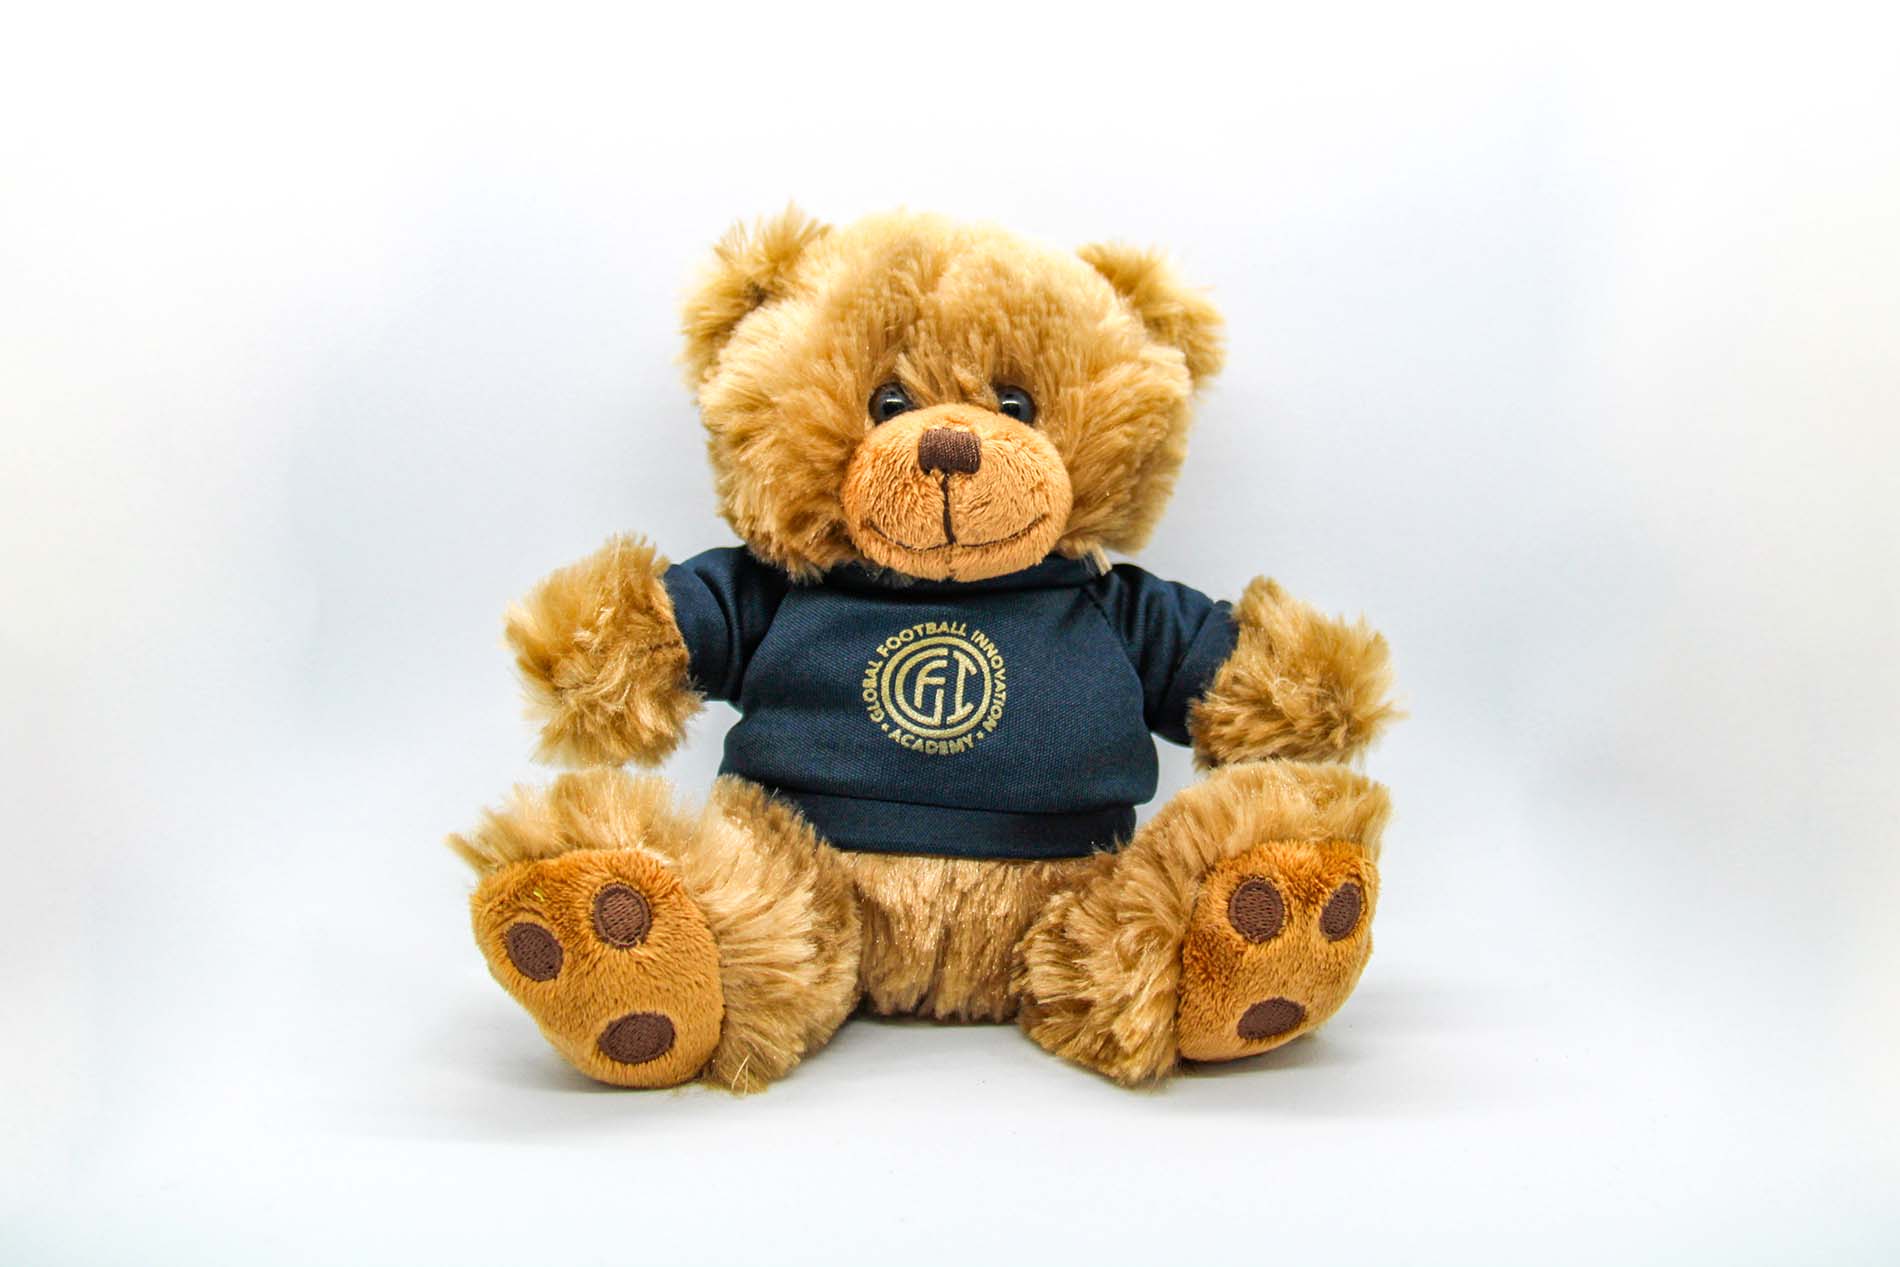 GFI Teddy Bear